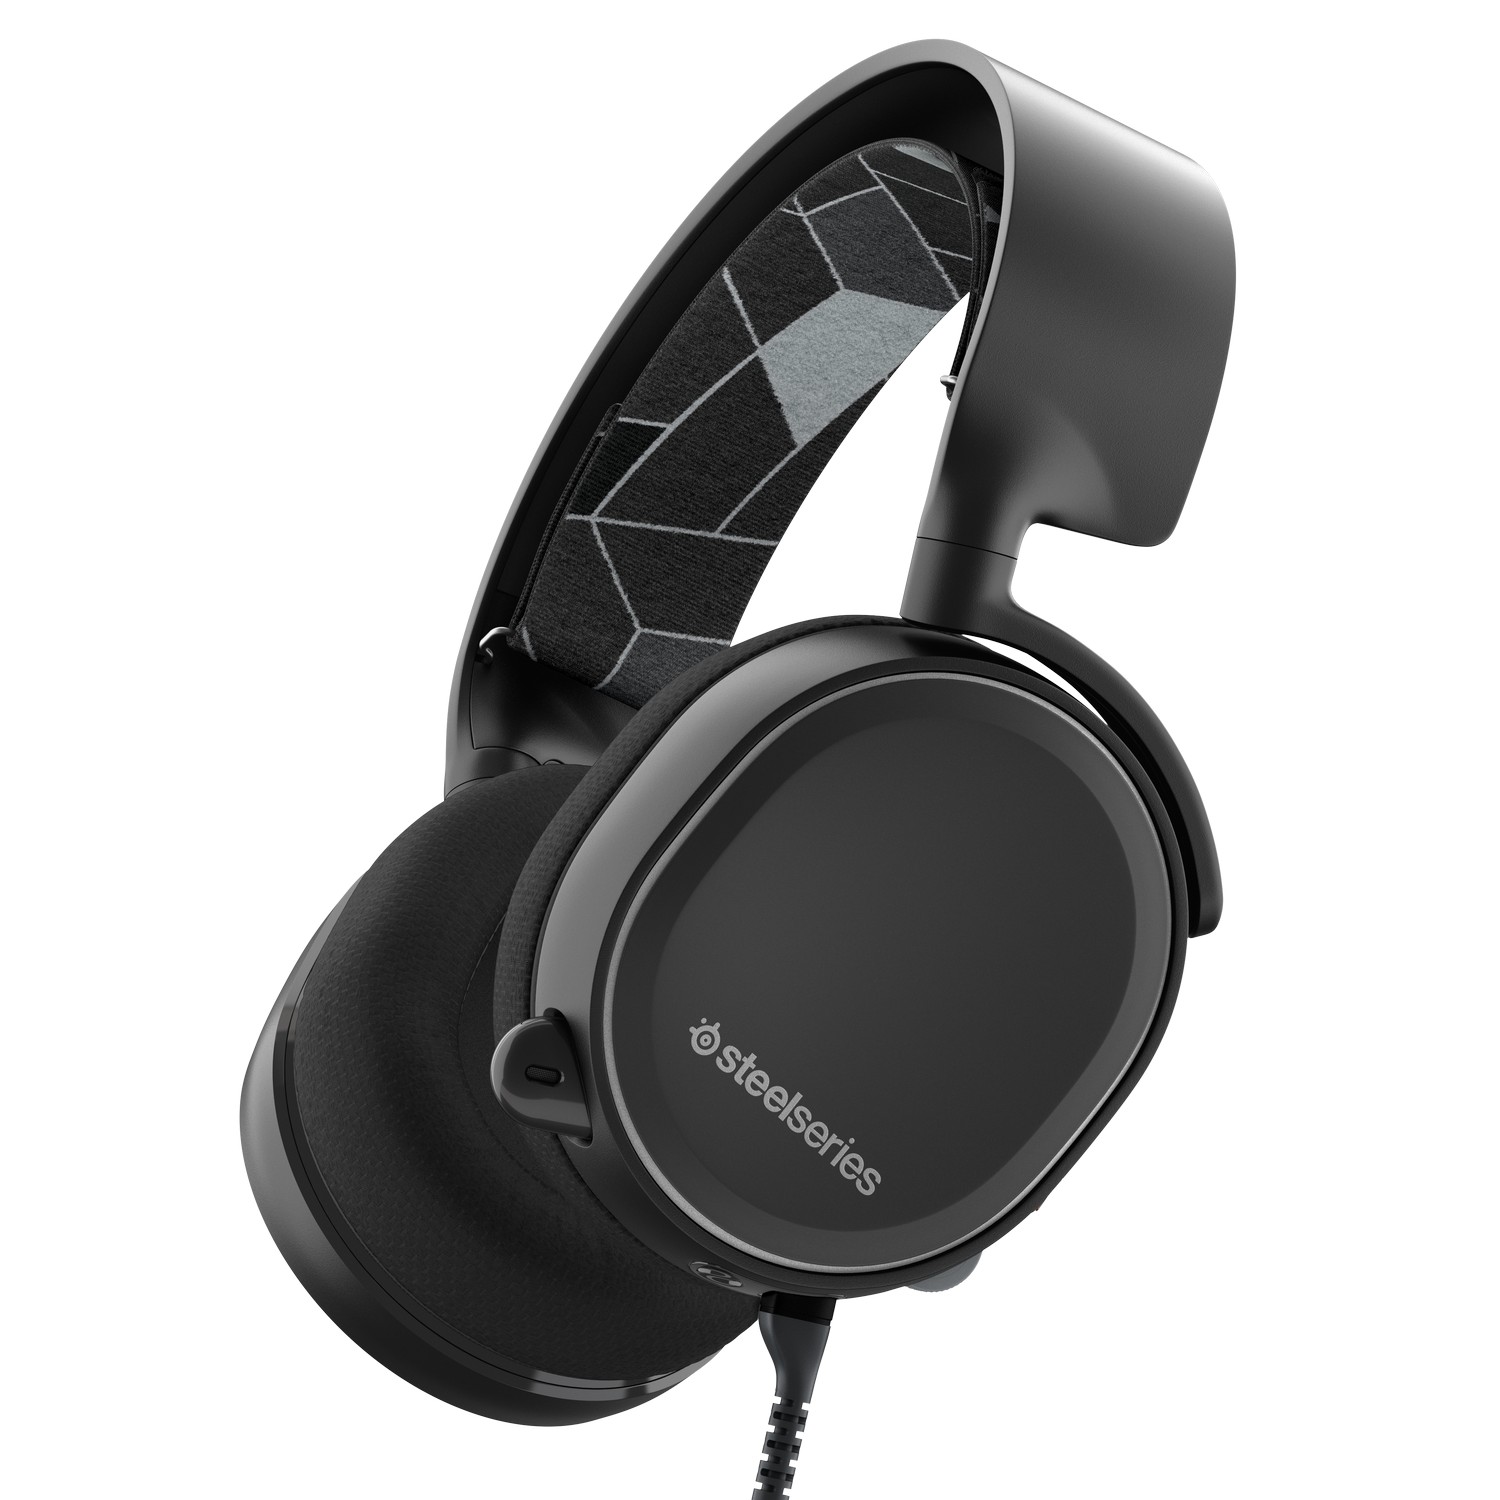 SteelSeries - SteelSeries Arctis 3 7.1 Surround Gaming Headset - Black (61503) 2019 Editi